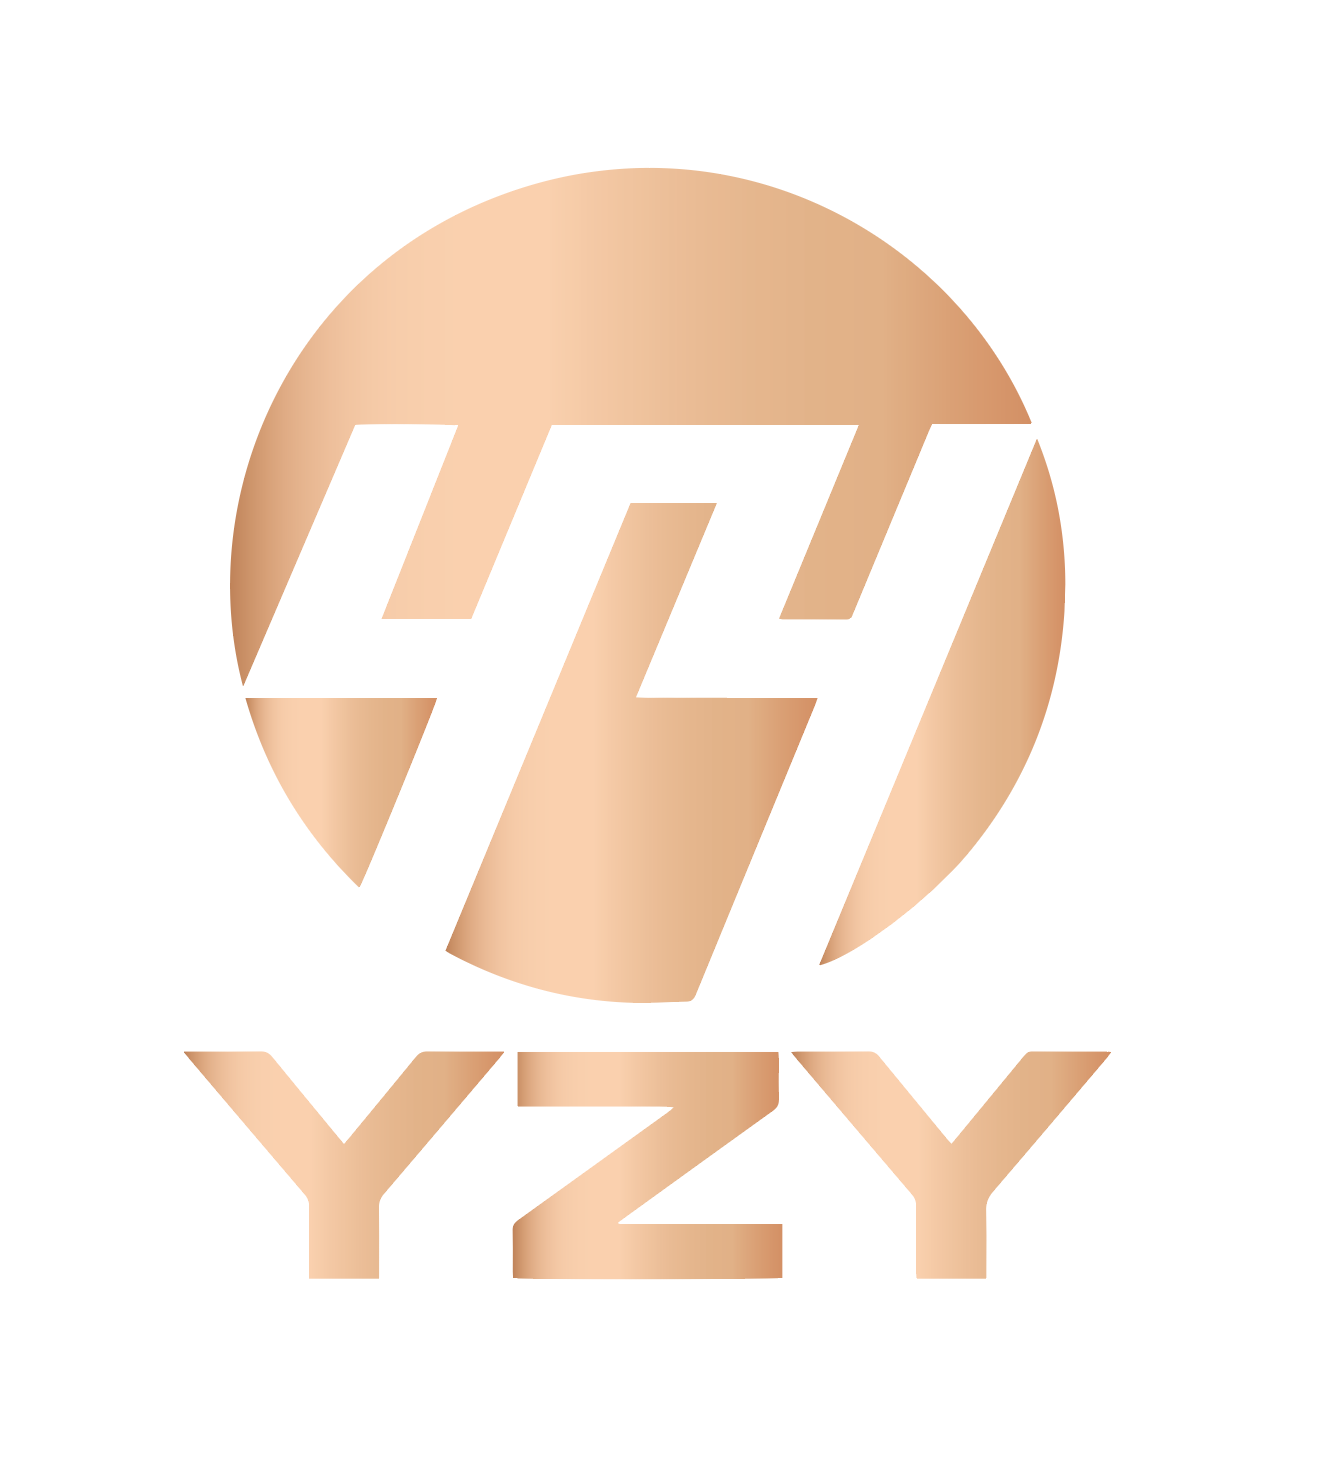 شركة Linyi Yongzheng Ye للتجارة الدولية المحدودة